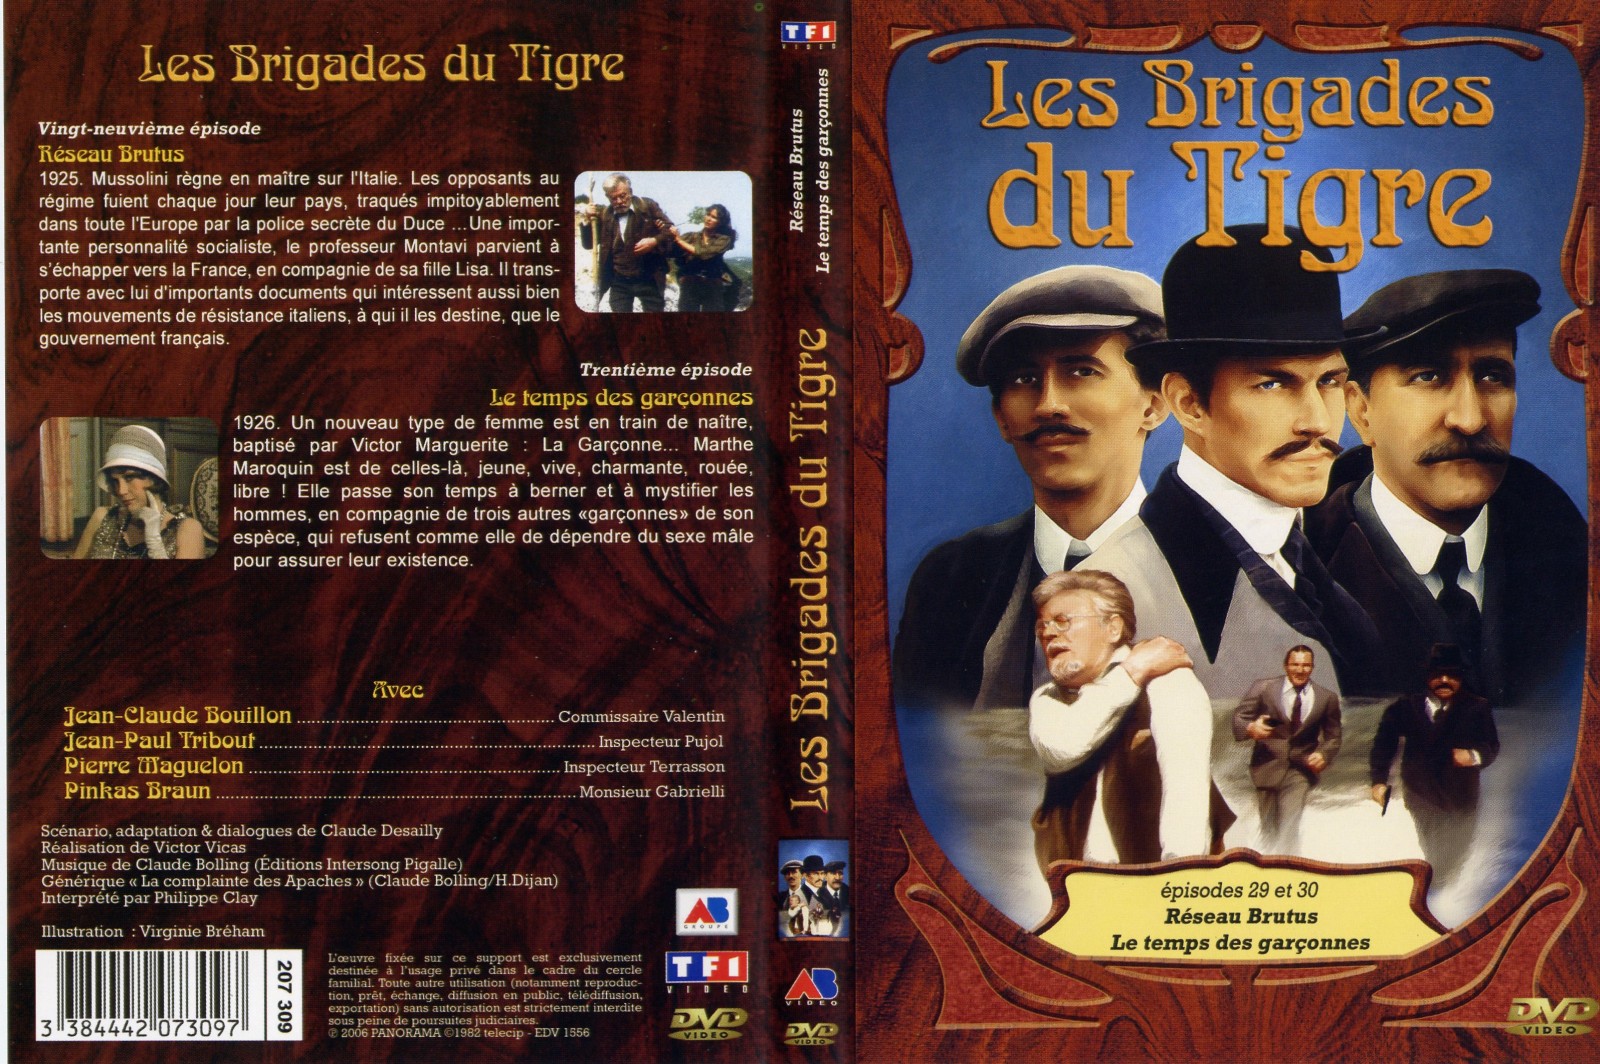 Jaquette DVD Les brigades du tigre vol 15